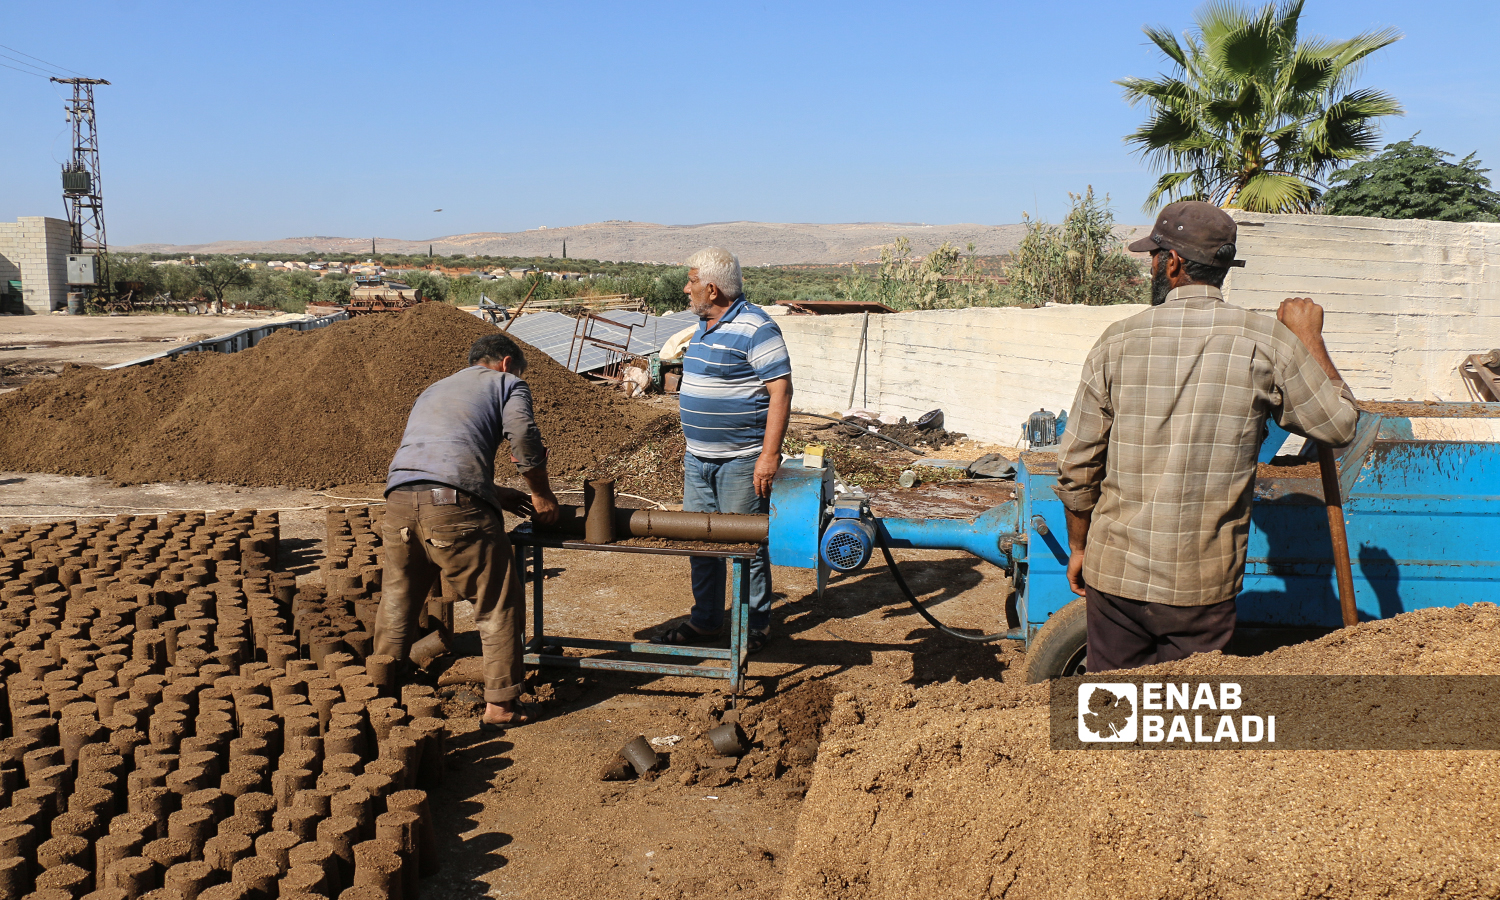 عمال يقومون بتشكيل مادة البيرين  وتقطيعها على شكل أنابيب خشبية في معارة الإخوان  بريف إدلب الشمالي  18 تشرين الأول 2021 (عنب بلدي - إياد عبد الجواد)